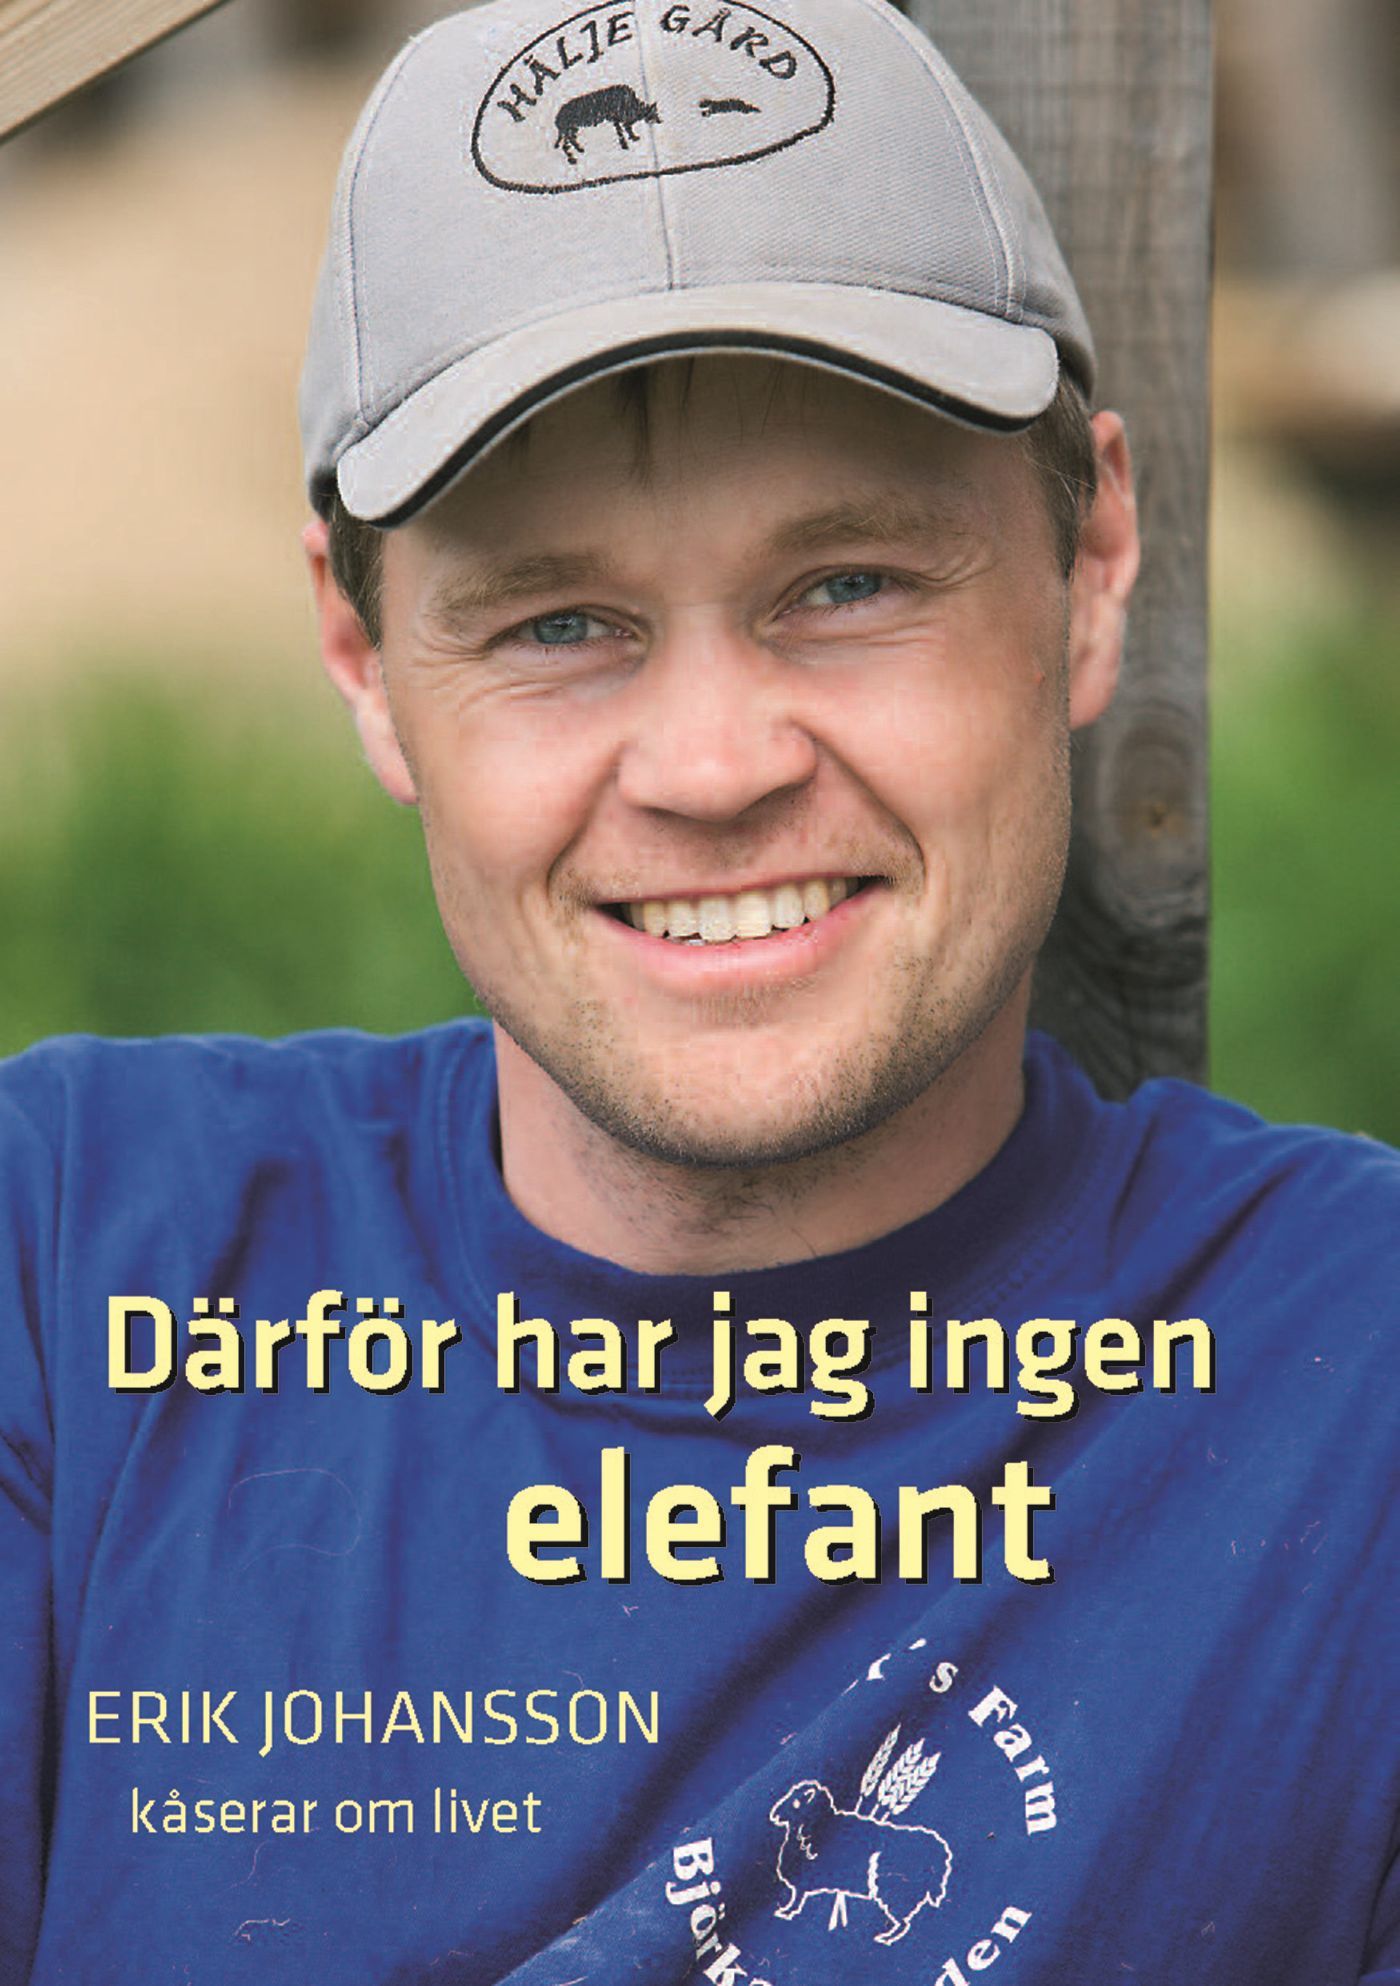 Därför har jag ingen elefant, eBook by Erik Johansson